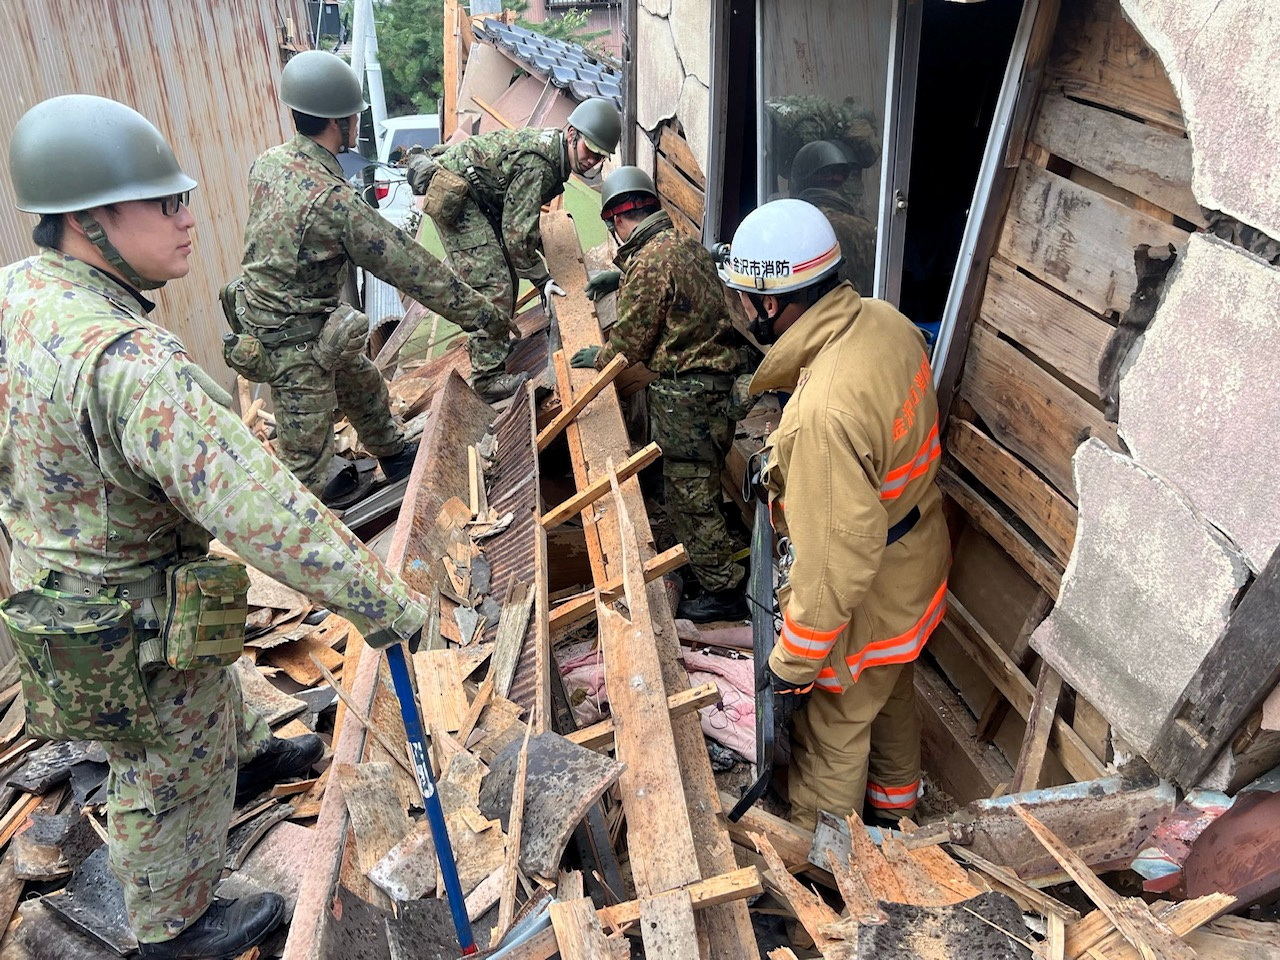 Ιαπωνία: Αγώνας δρόμου για επιζώντες στα συντρίμμια  - Στους 55 οι νεκροί από τον σεισμό